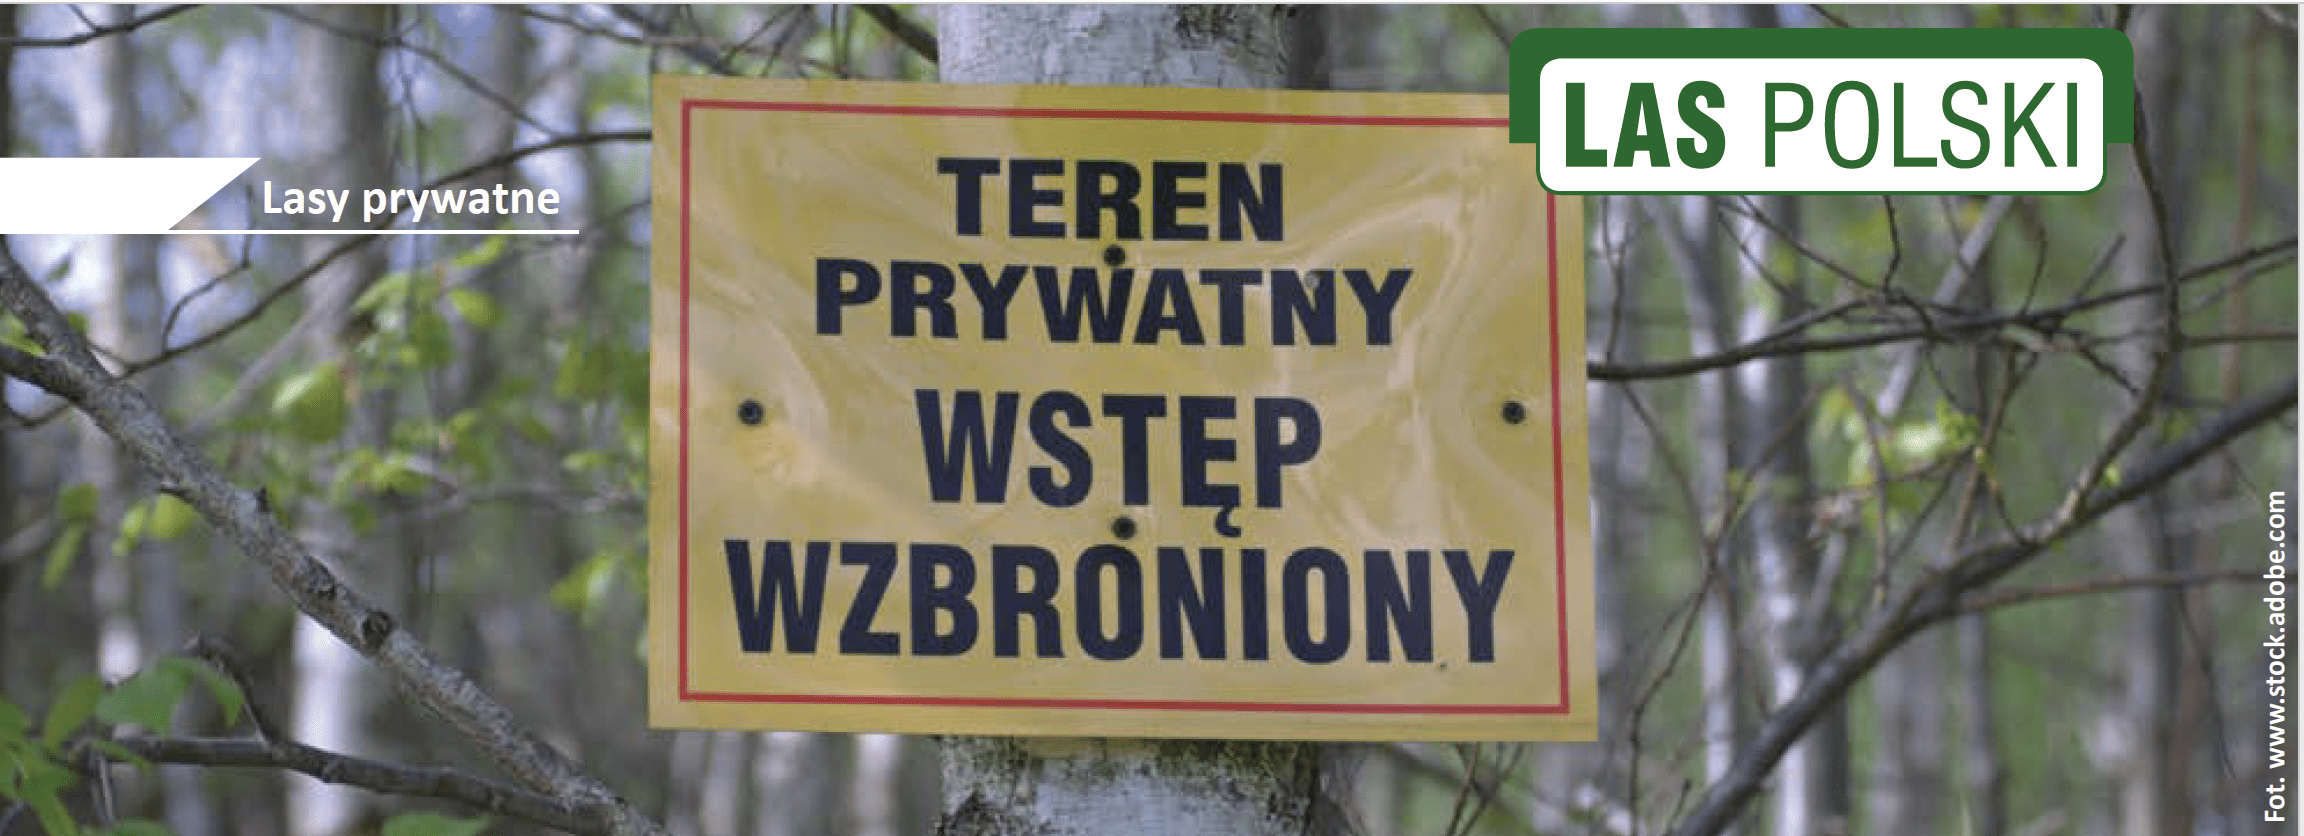 Las Polski nagłówek